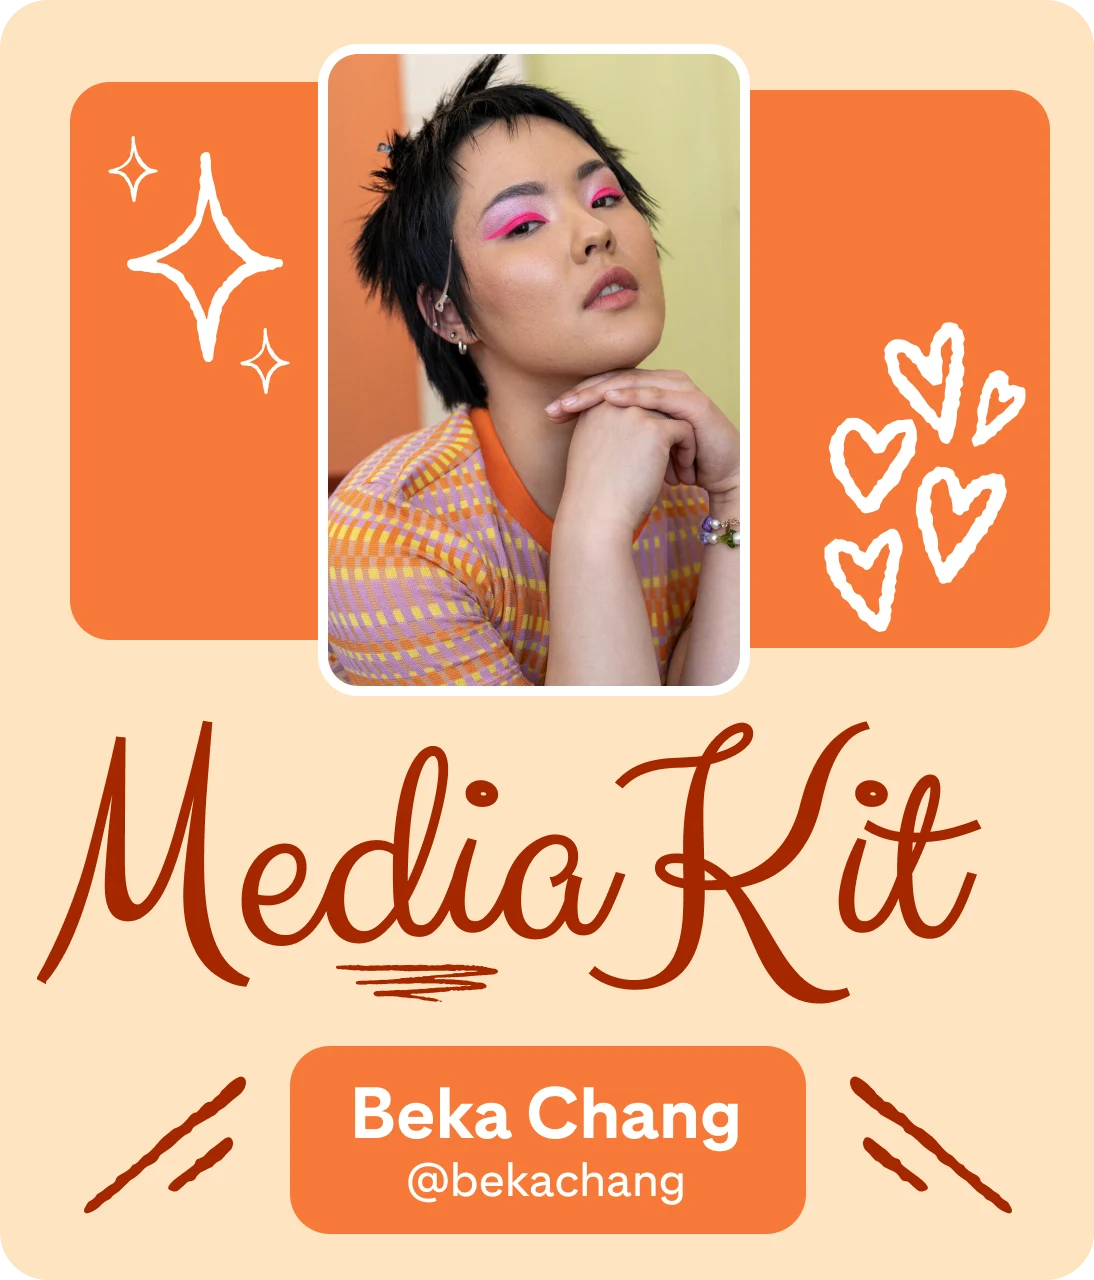 Spanduk kit media bertema oranye untuk Beka Chang